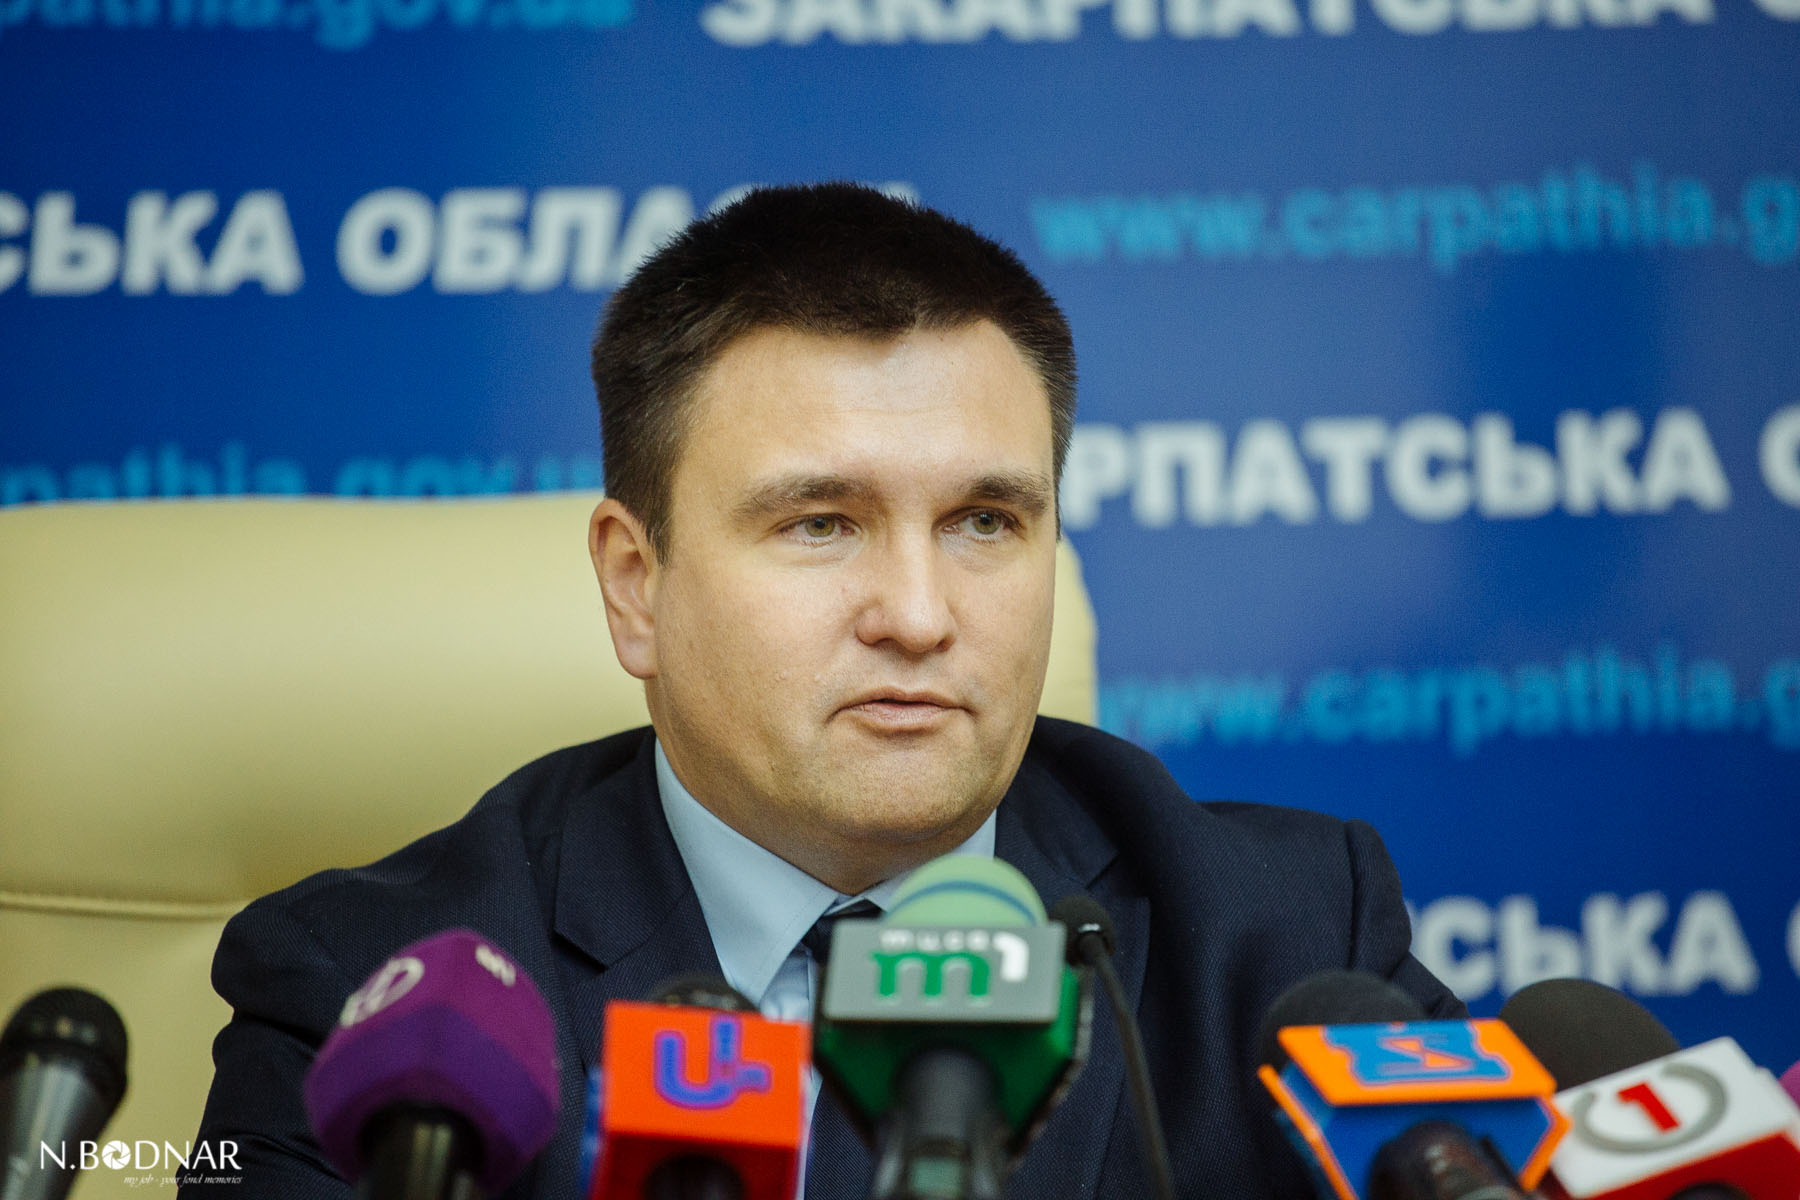 Про це заявив міністр закордонних справ України Павло Клімкін, який перебував в Ужгороді з робочим візитом.

